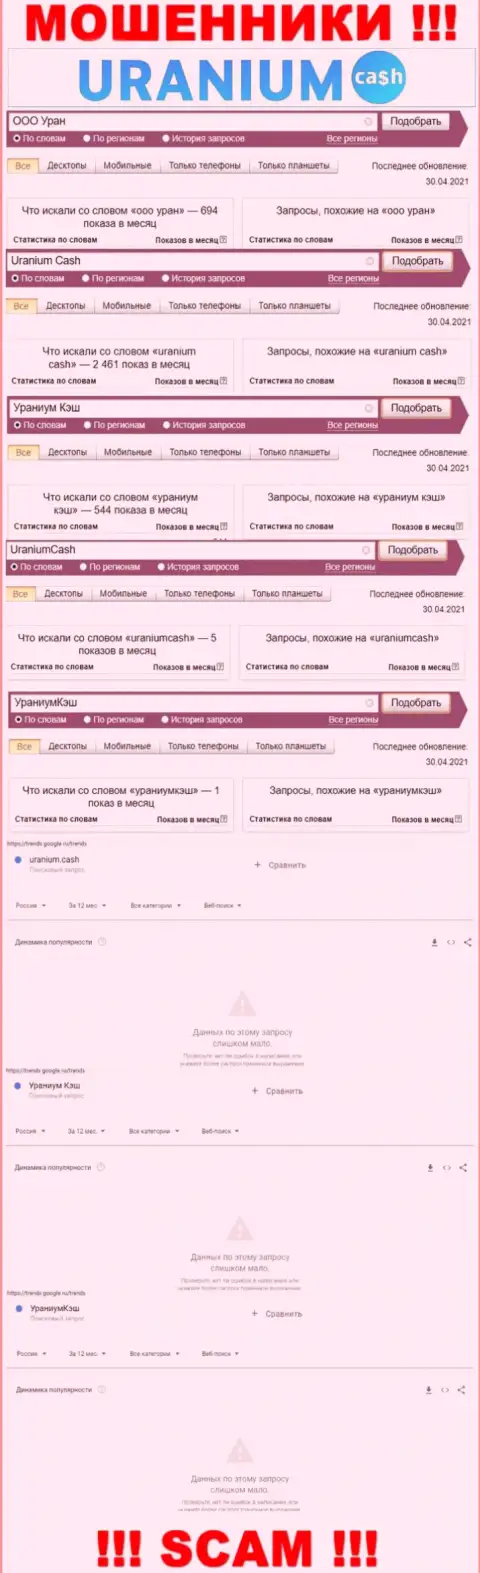 Online запросы по бренду мошенников ООО Уран в поисковиках интернета